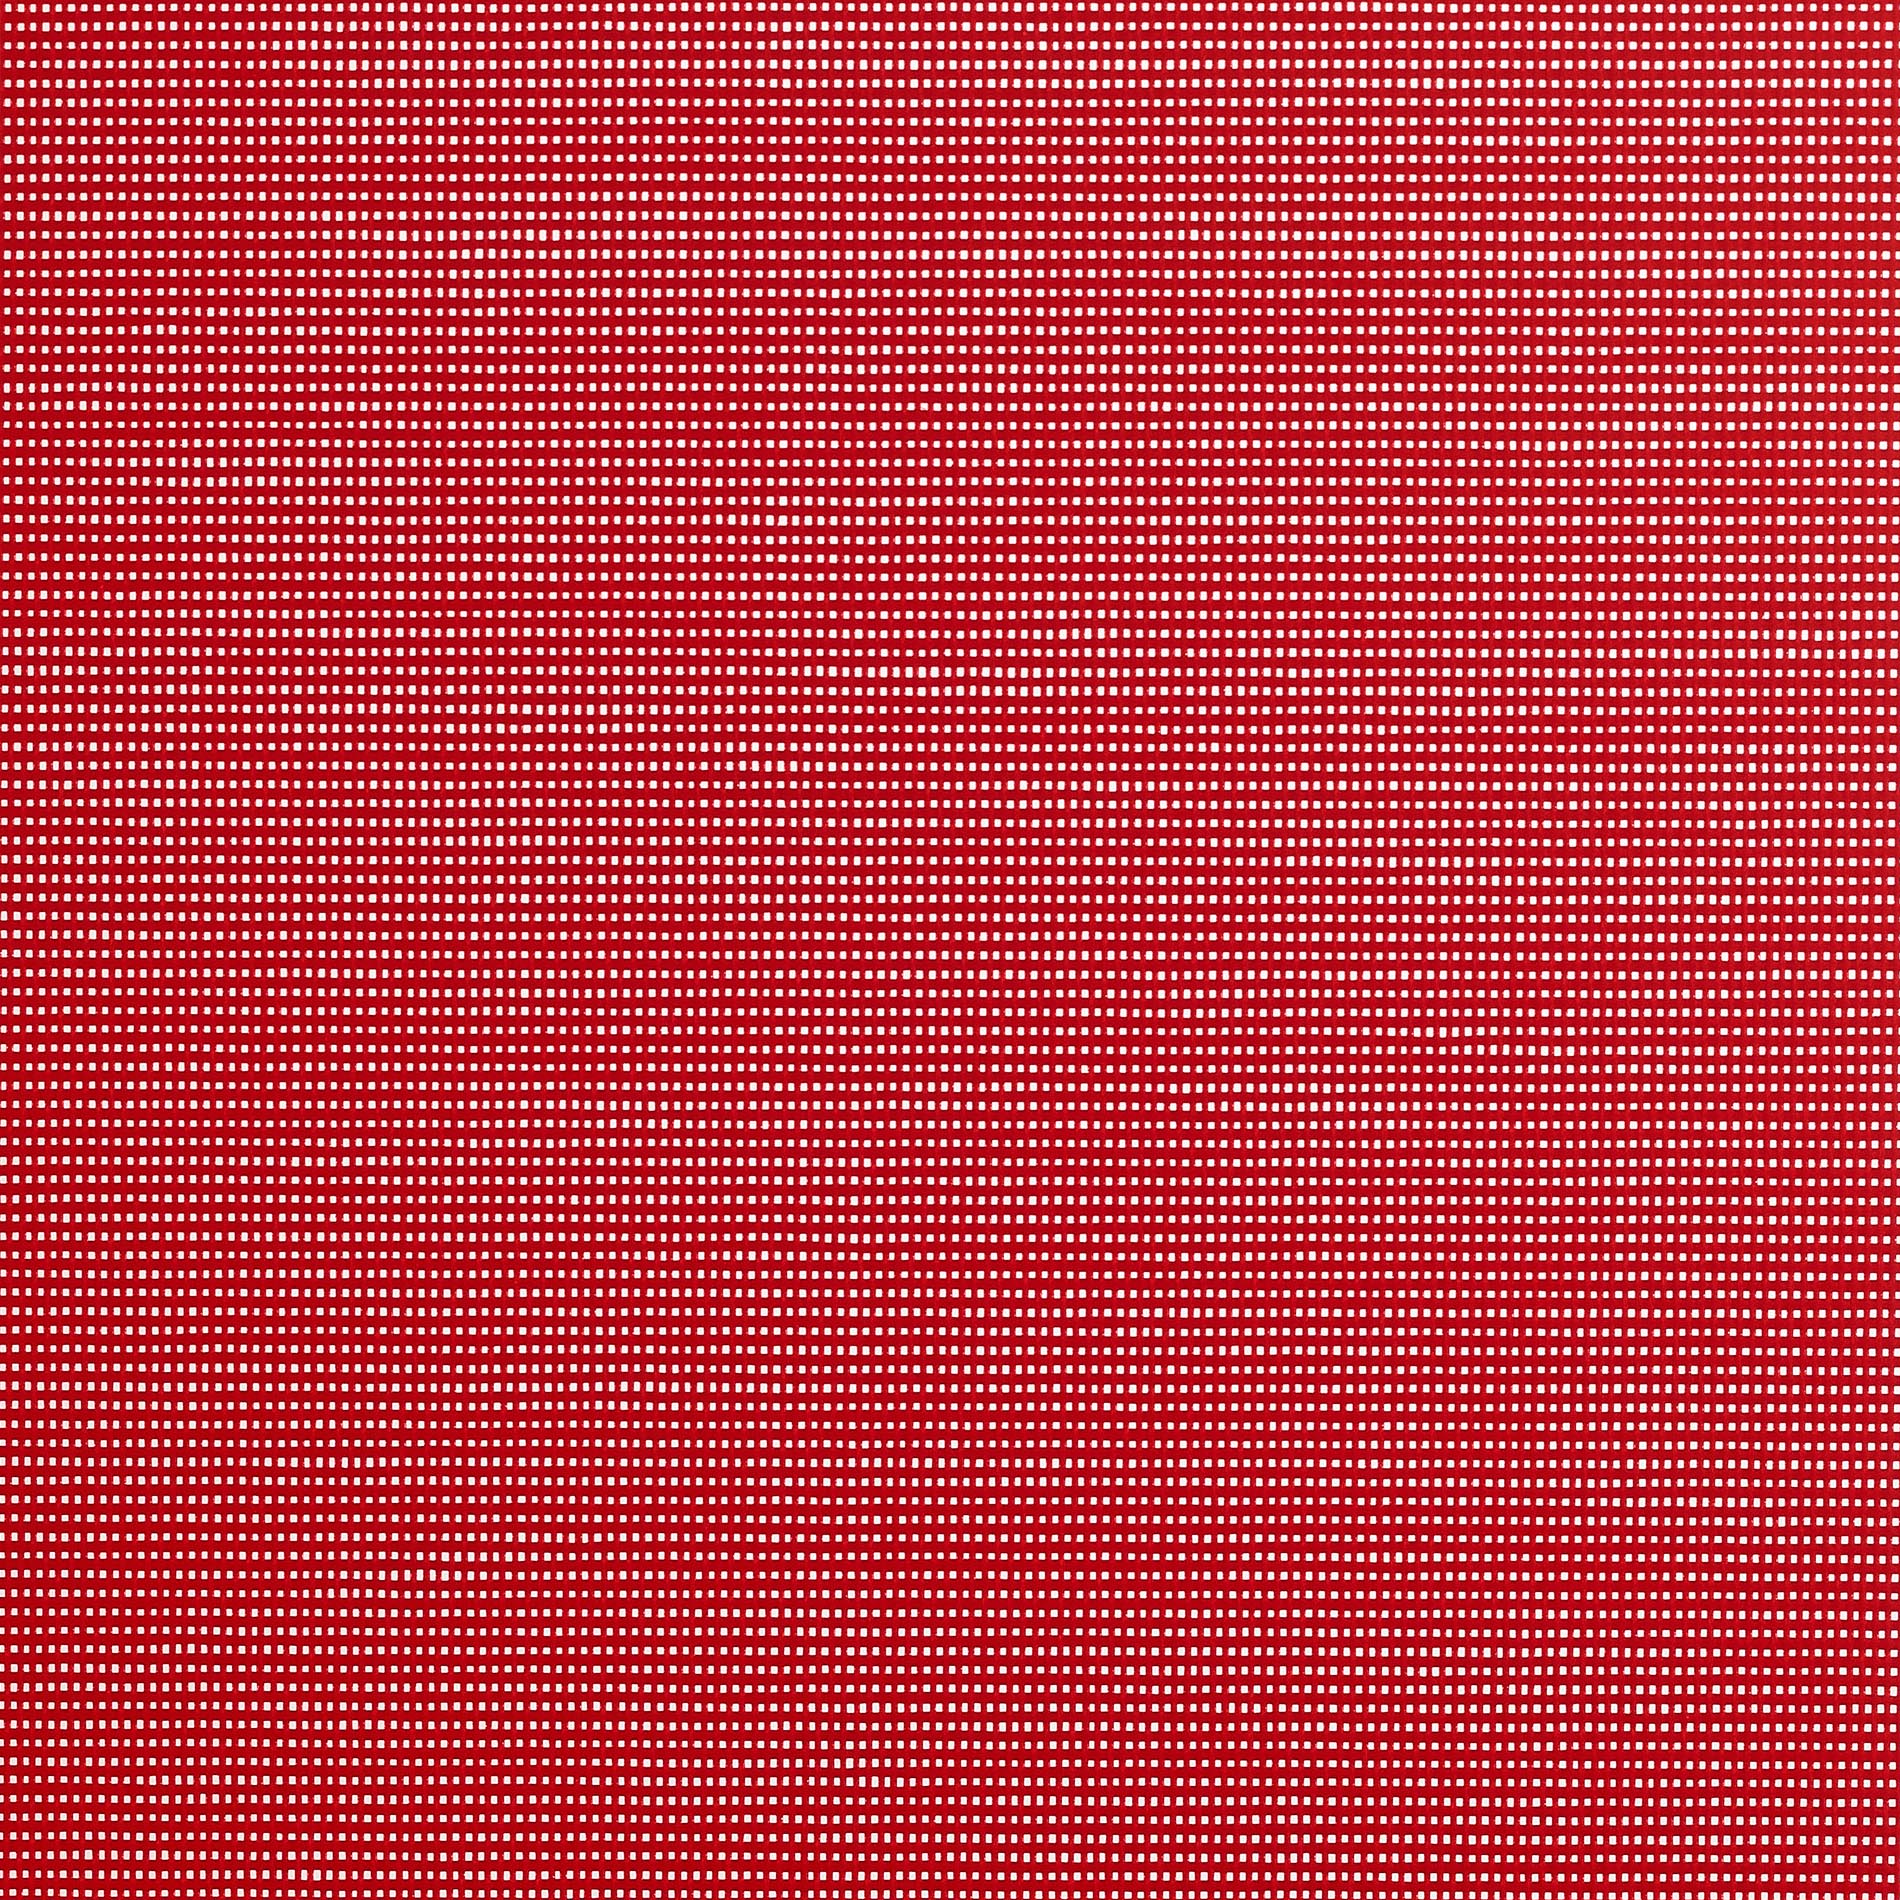 Altex - Fabric - SOLTIS HORIZON 86 - Red - 86-8255